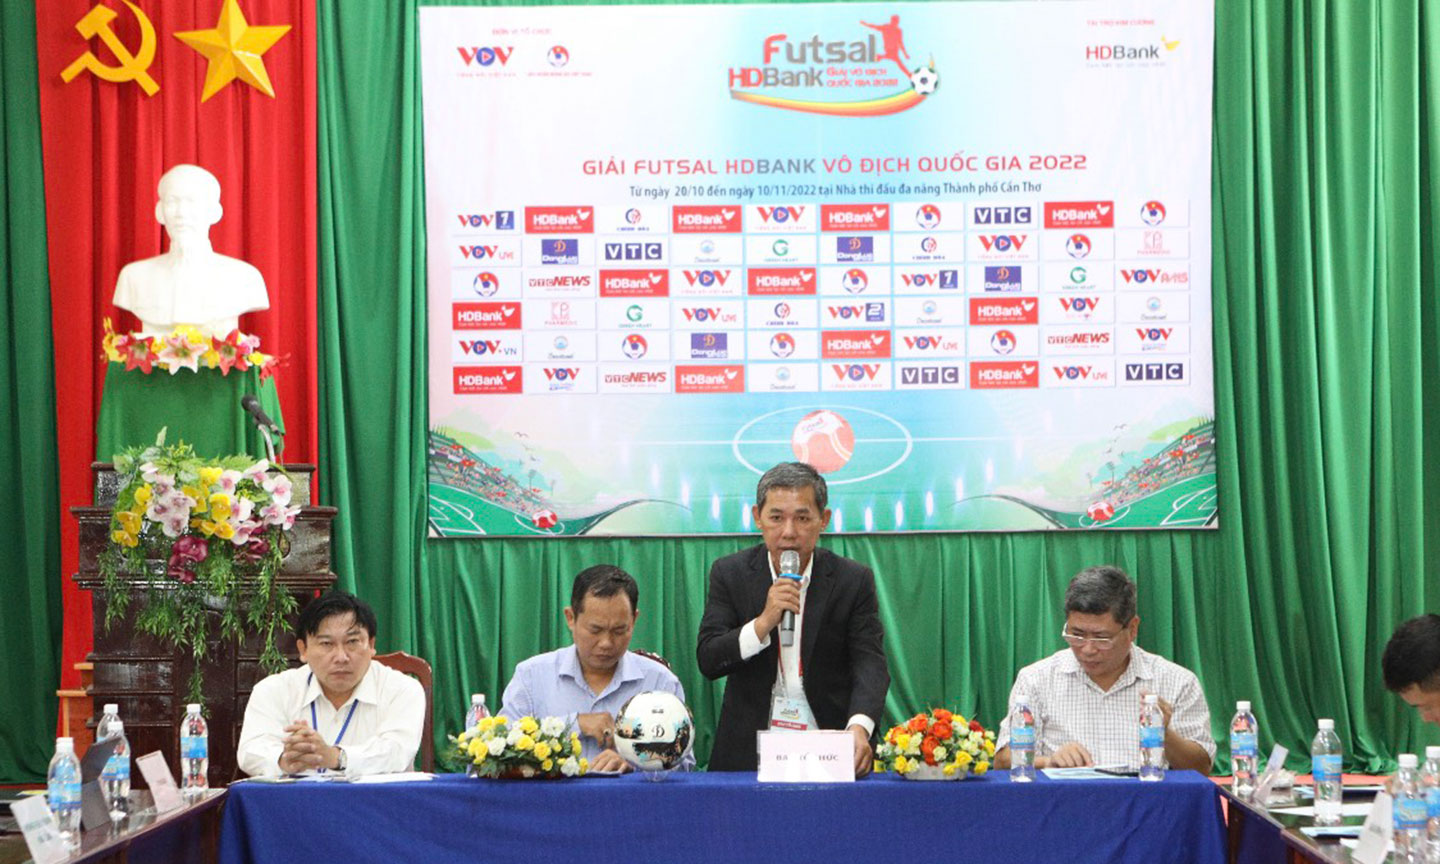 Quang cảnh buổi họp báo Giải Futsal HDBank Vô địch Quốc gia năm 2022.